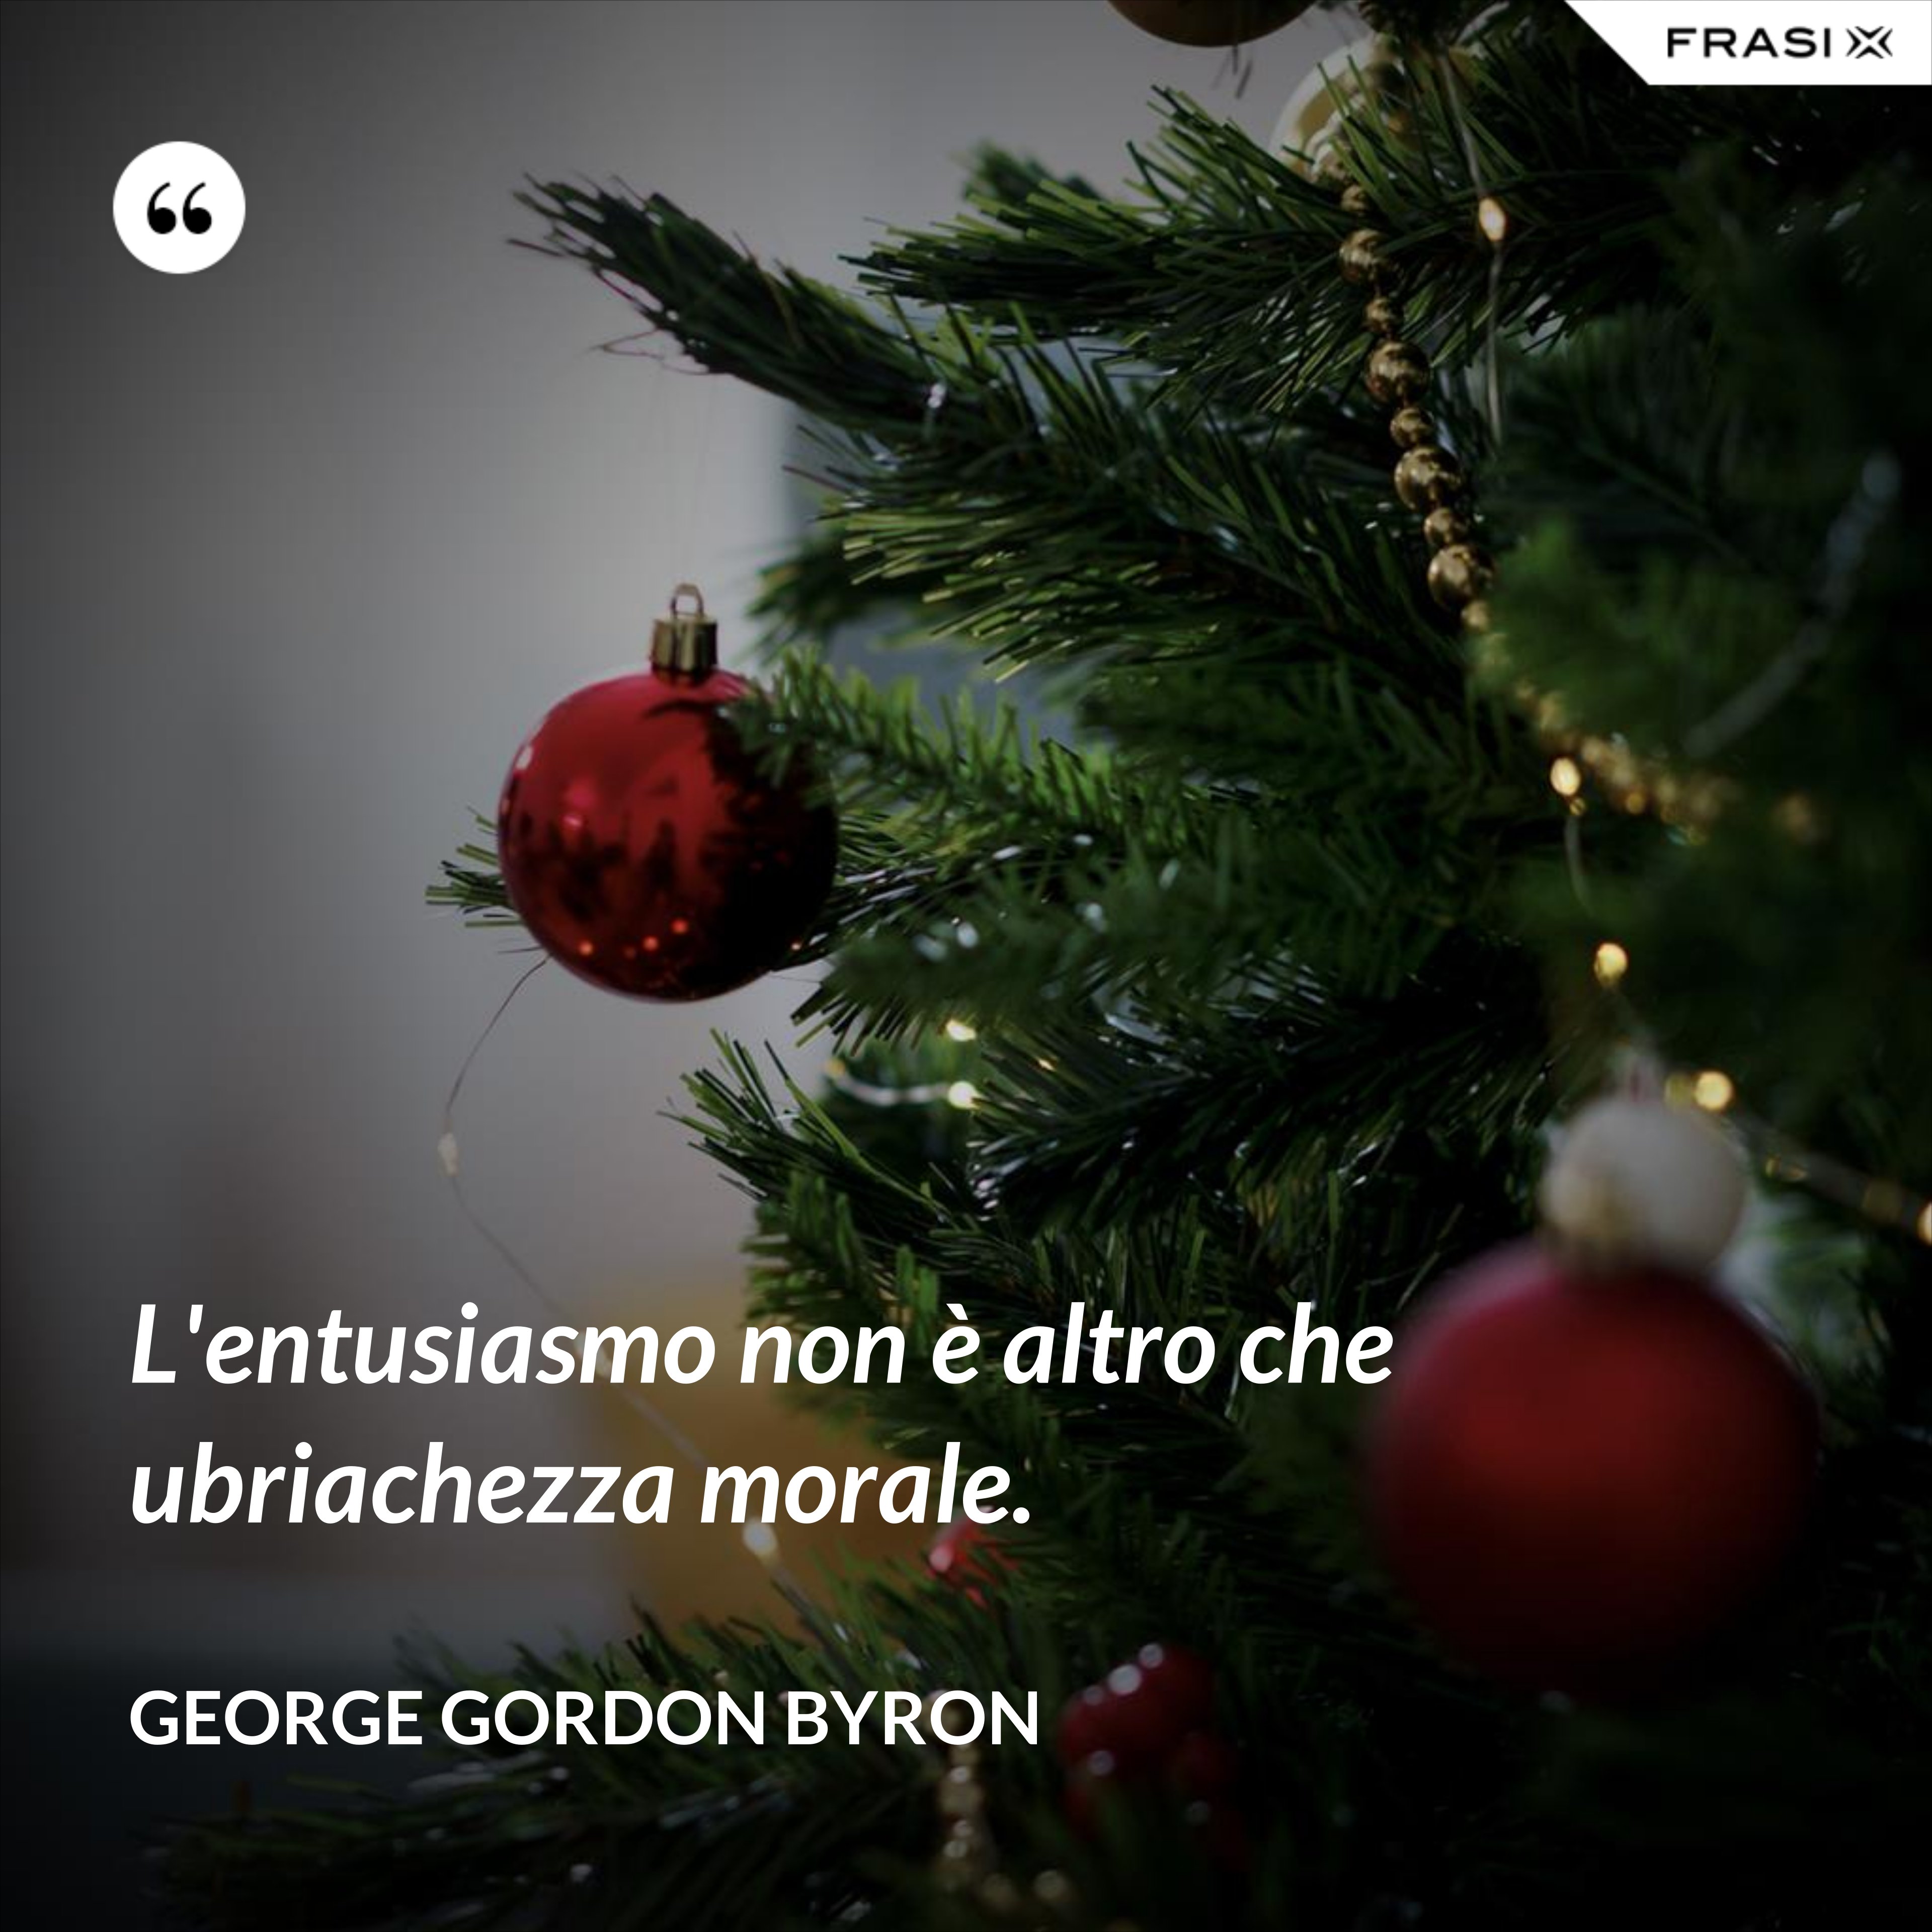 L'entusiasmo non è altro che ubriachezza morale. - George Gordon Byron